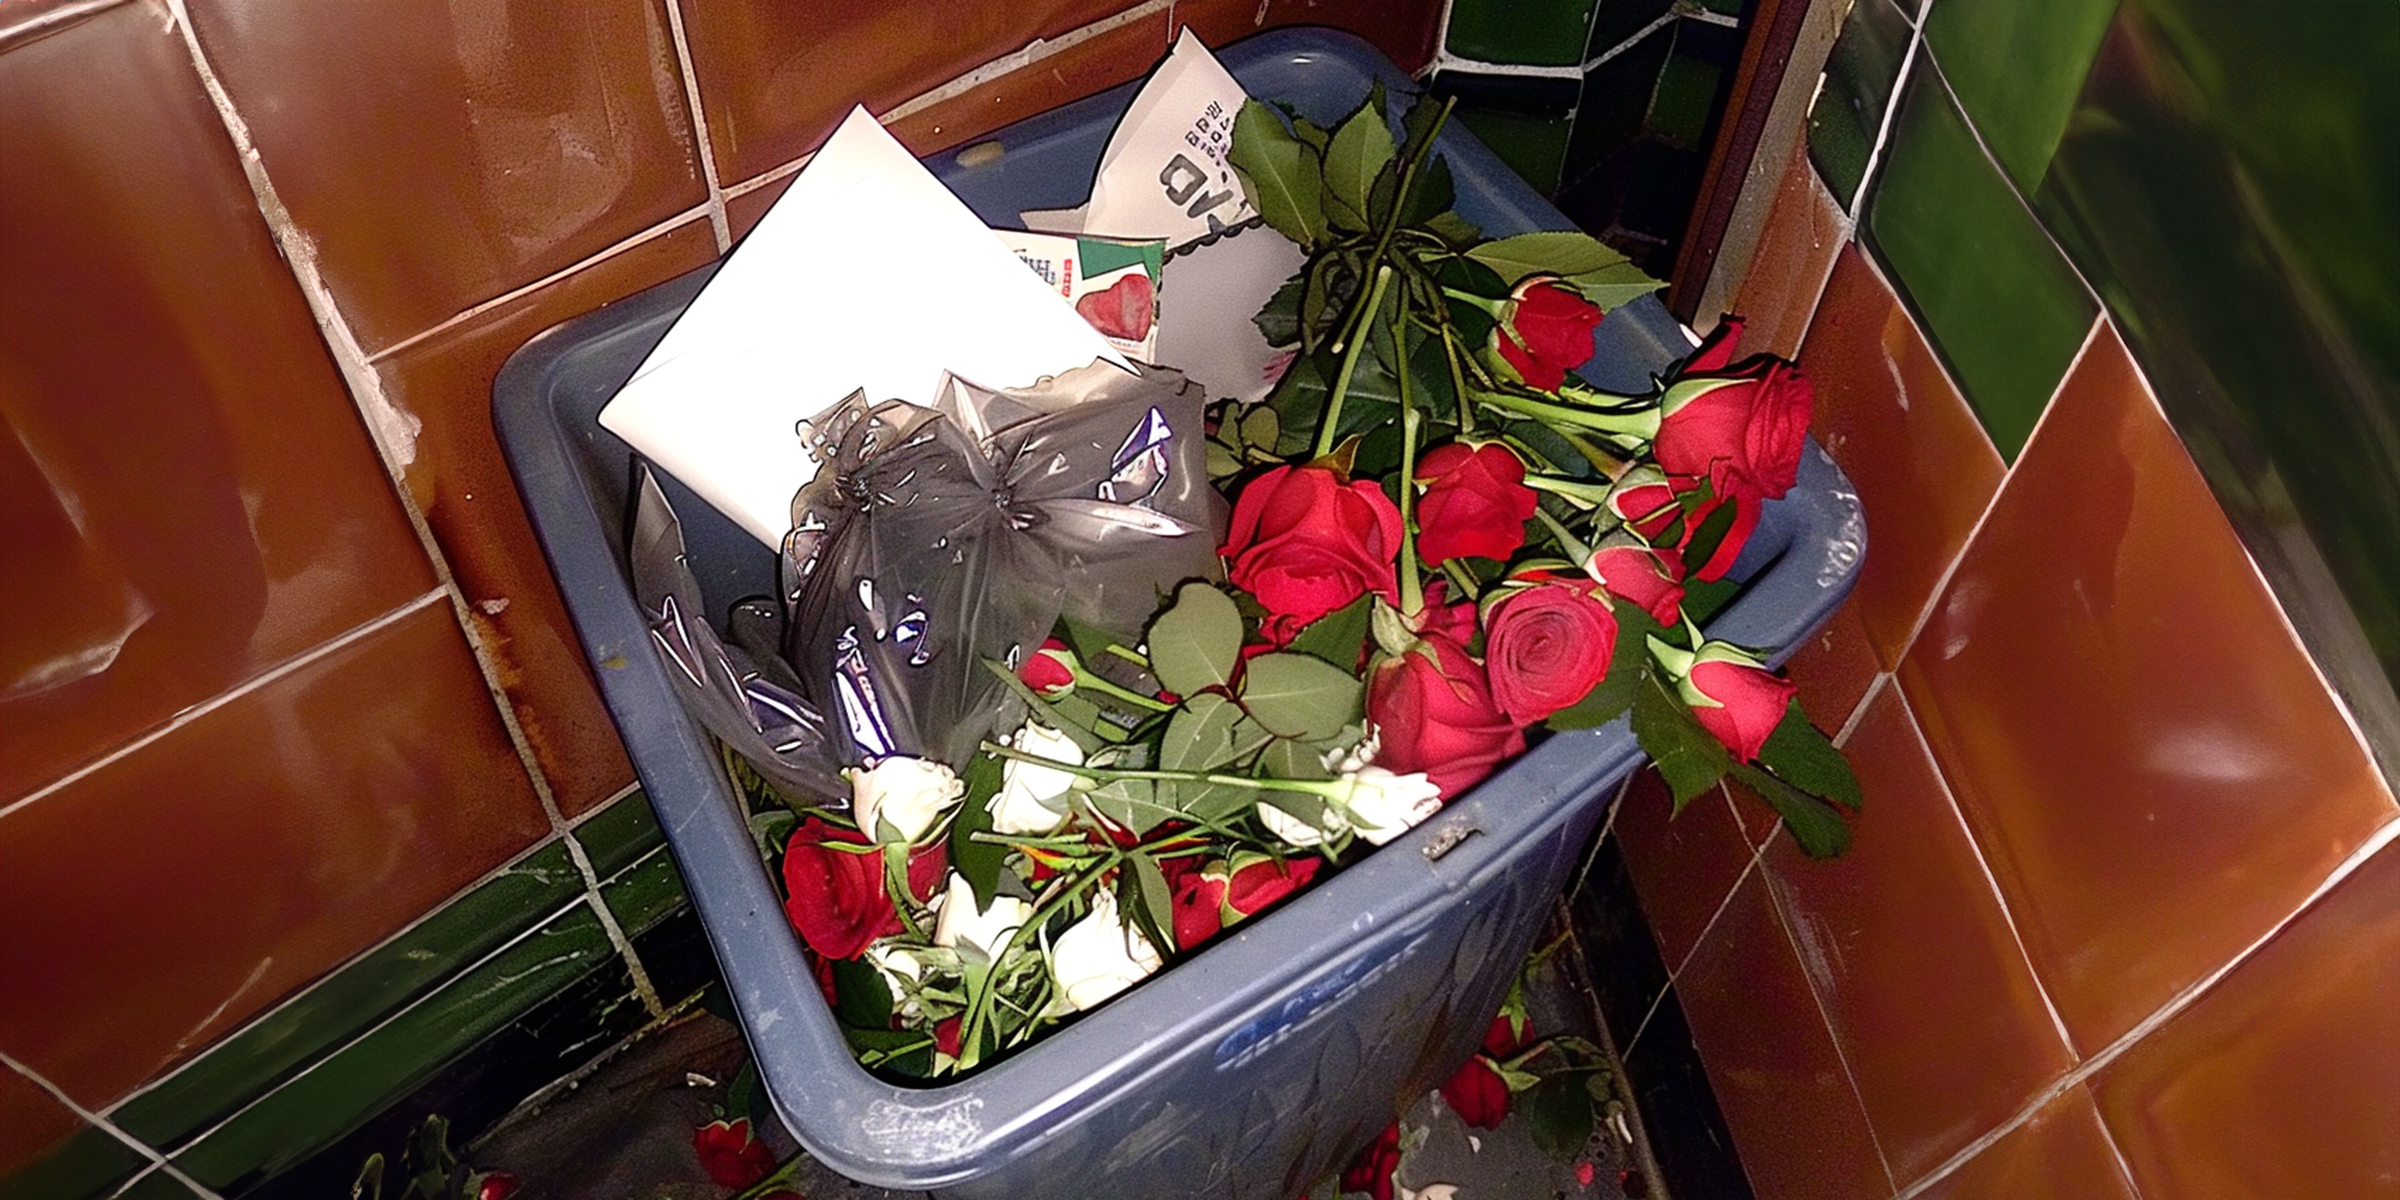 Rosen in einem Mülleimer | Quelle: AmoMama